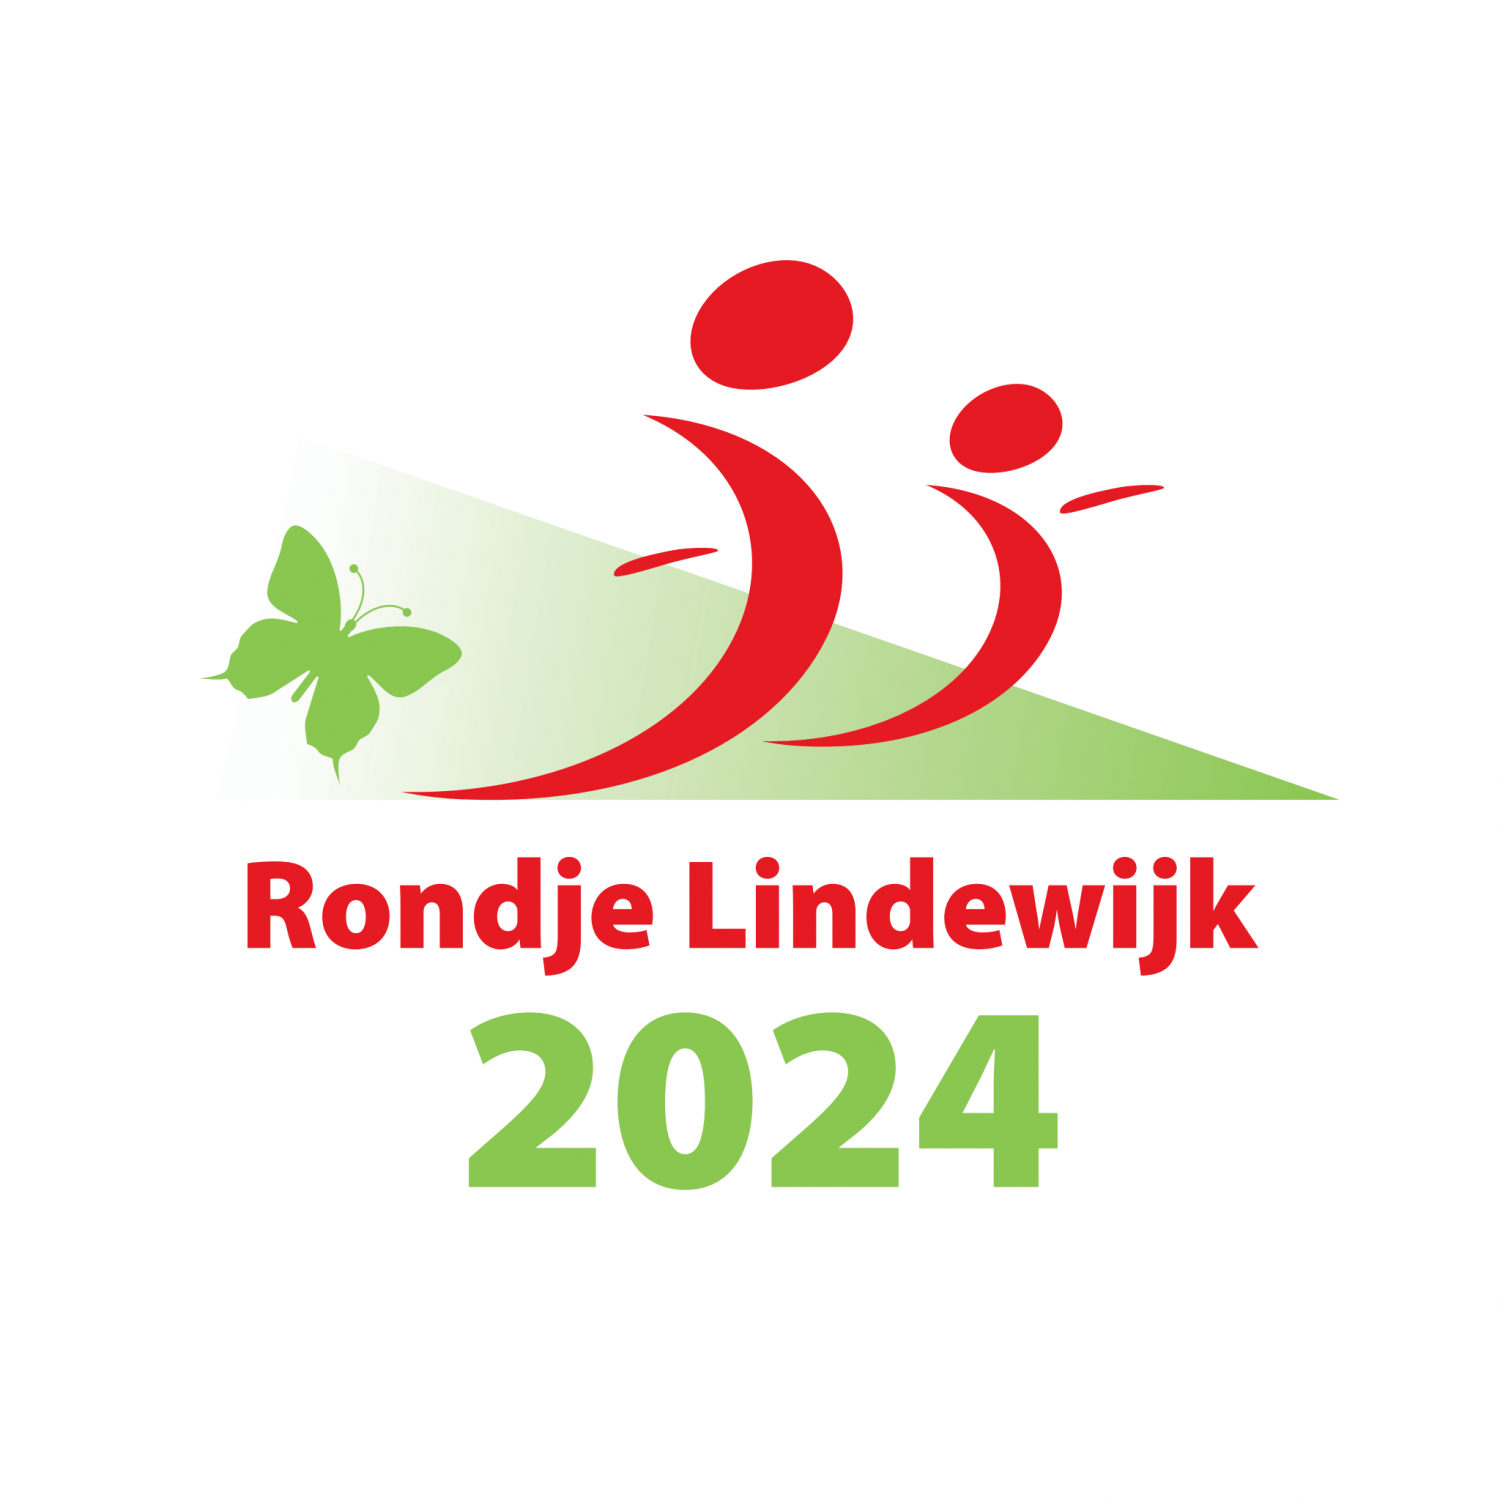 Rondje Lindewijk 2024